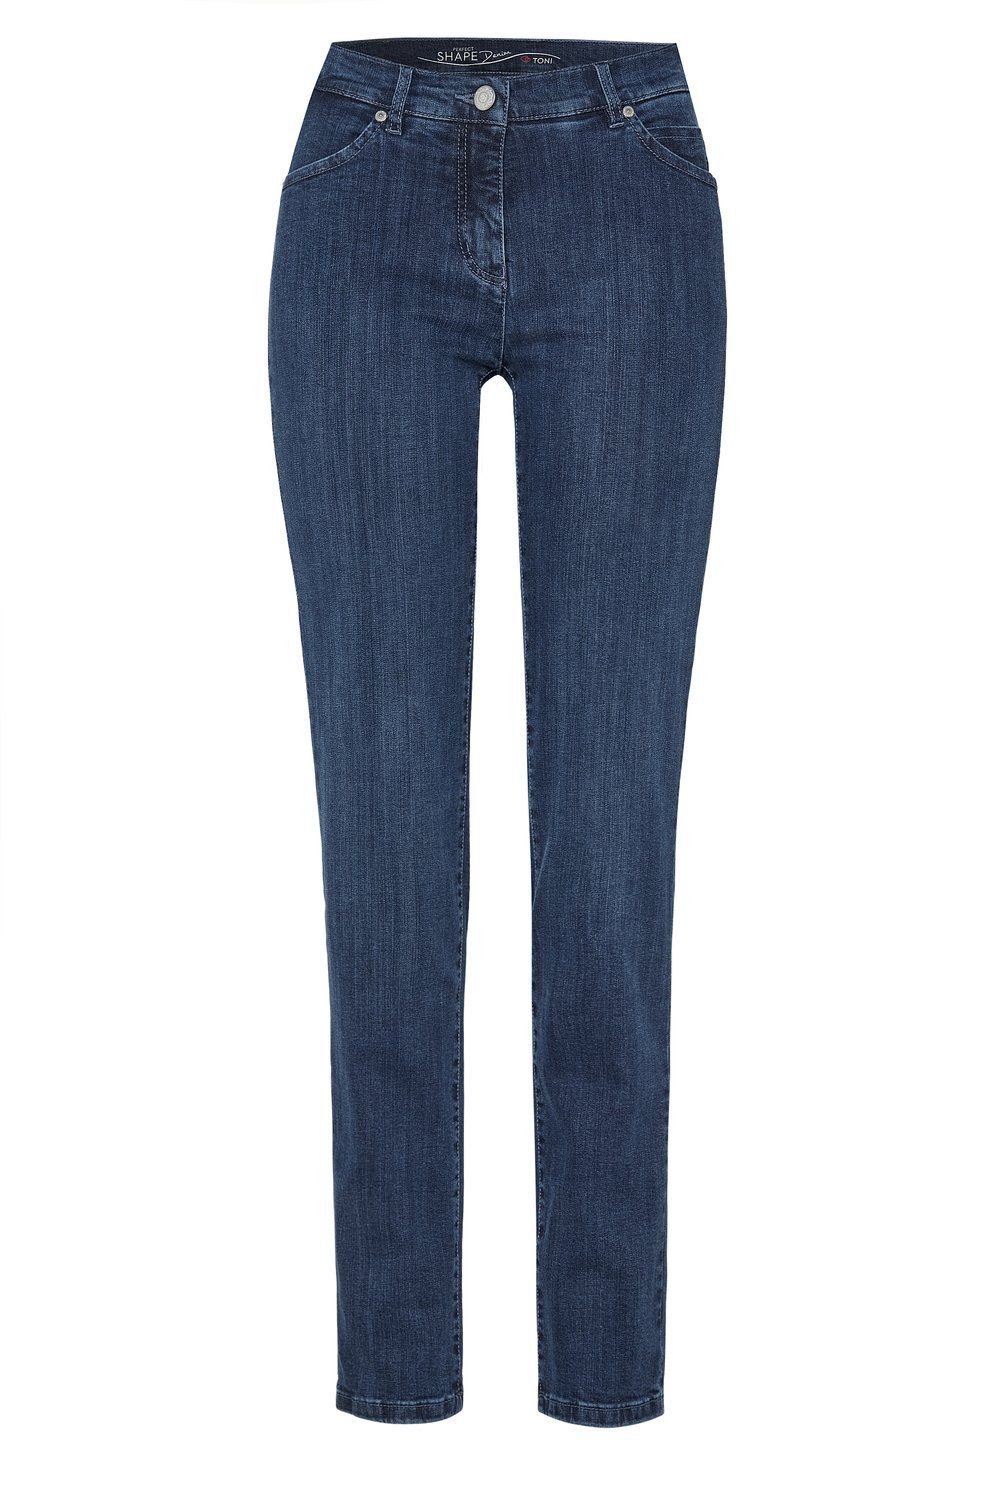 TONI Bequeme Jeans Perfect Shape Slim 502 | Jeans